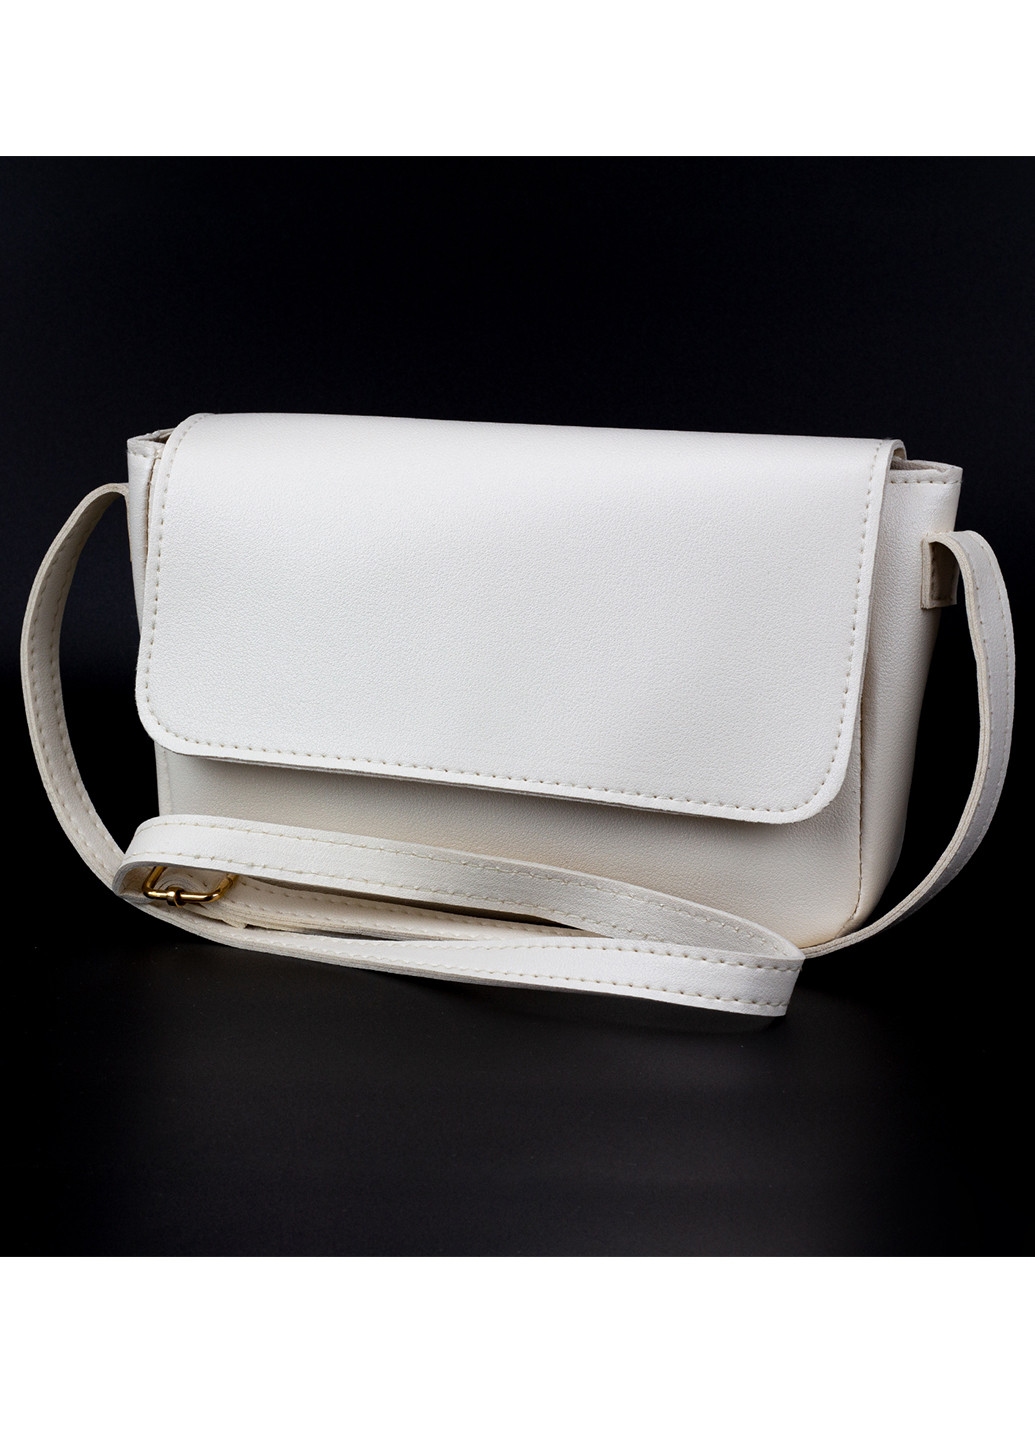 Жіноча невелика сумка біла Corze ab14053 (260026880)